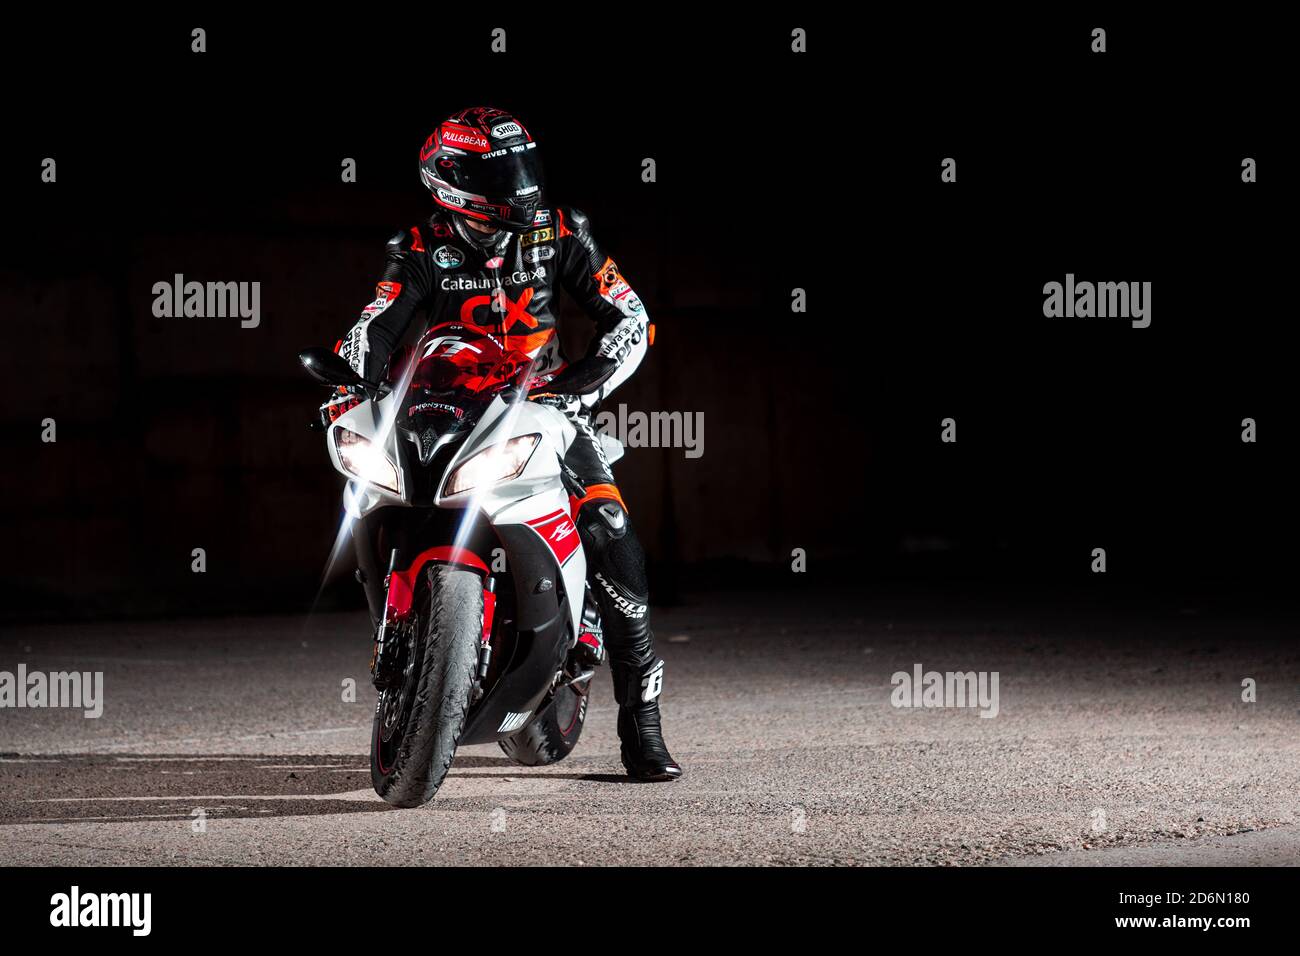 15.10.20, Kalifornien, USA. Der Fahrer in einer Motorradjacke und Helm  sitzt auf einem Sportbike. Schwarzer Hintergrund. Speicherplatz kopieren  Stockfotografie - Alamy